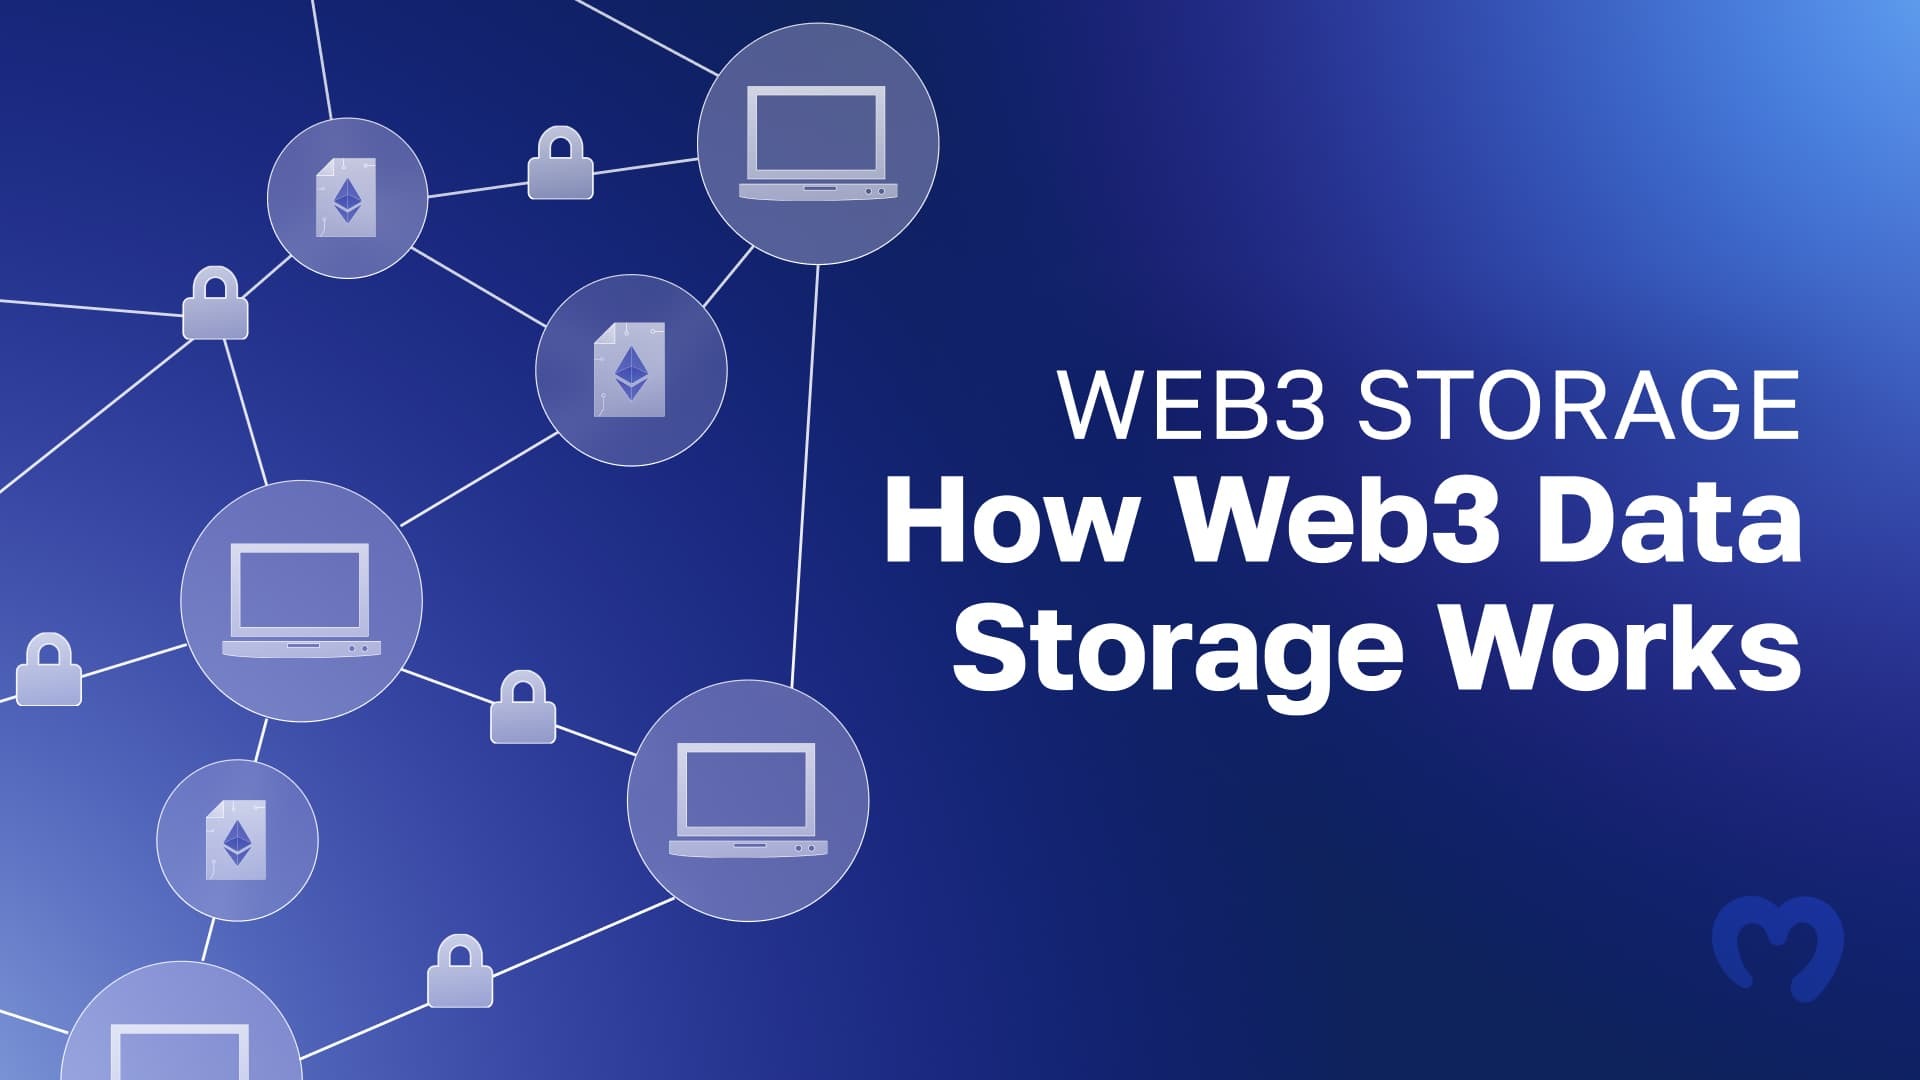 Web3 Storage - How Web3 Data Storage Works